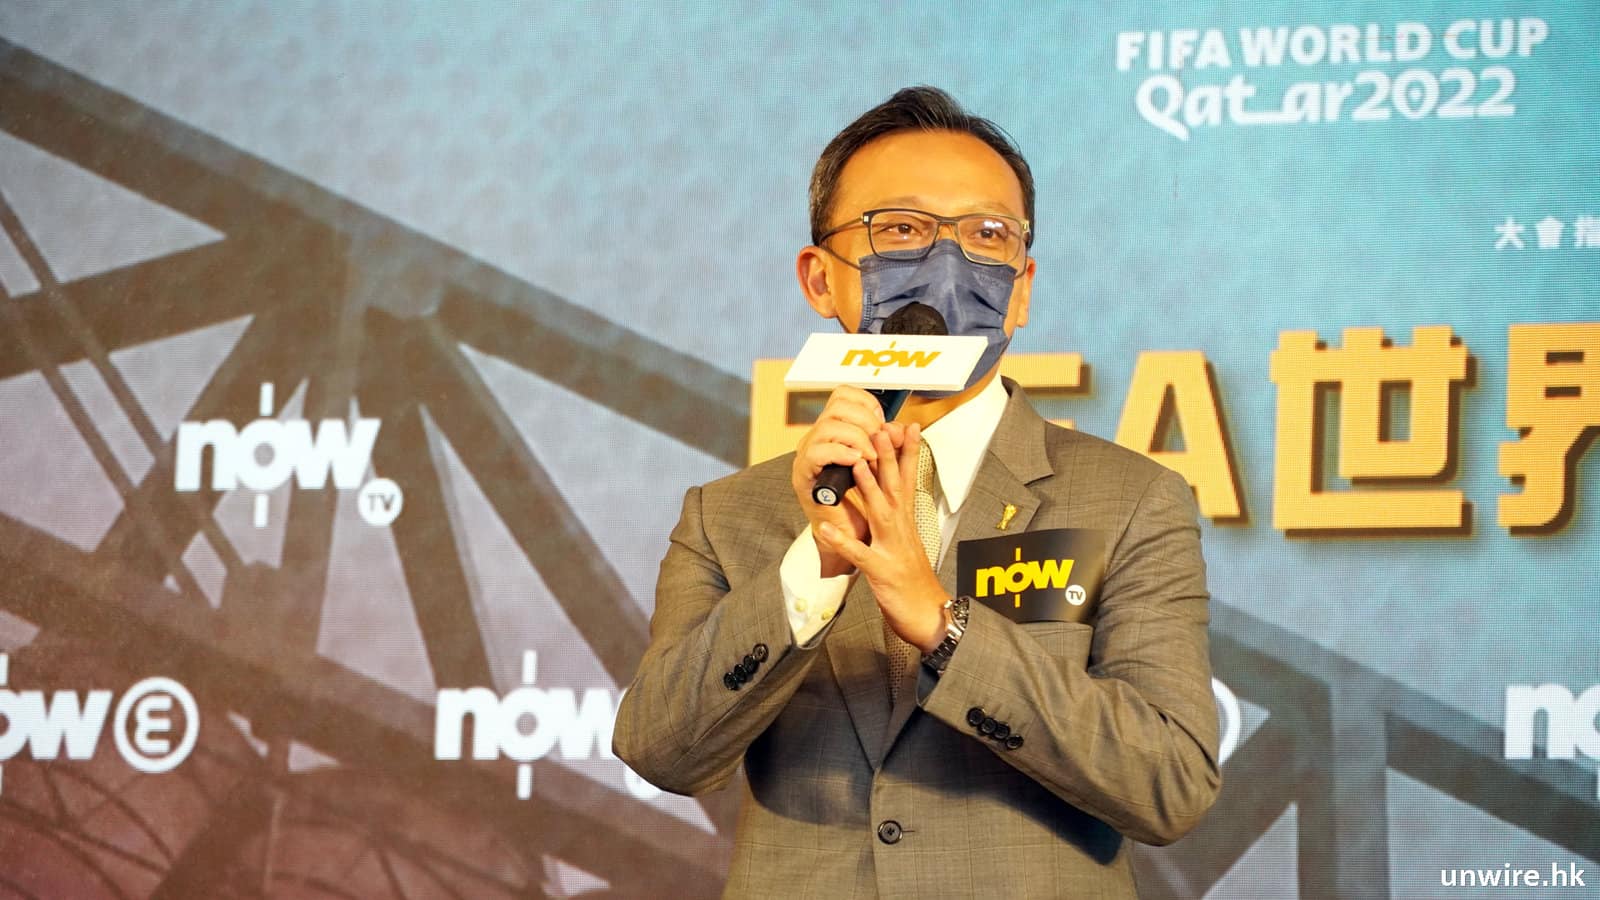 NowTV / Now E 64 場卡塔爾世界盃全4K 直播新增AR 元素睇即場數據- 香港unwire.hk